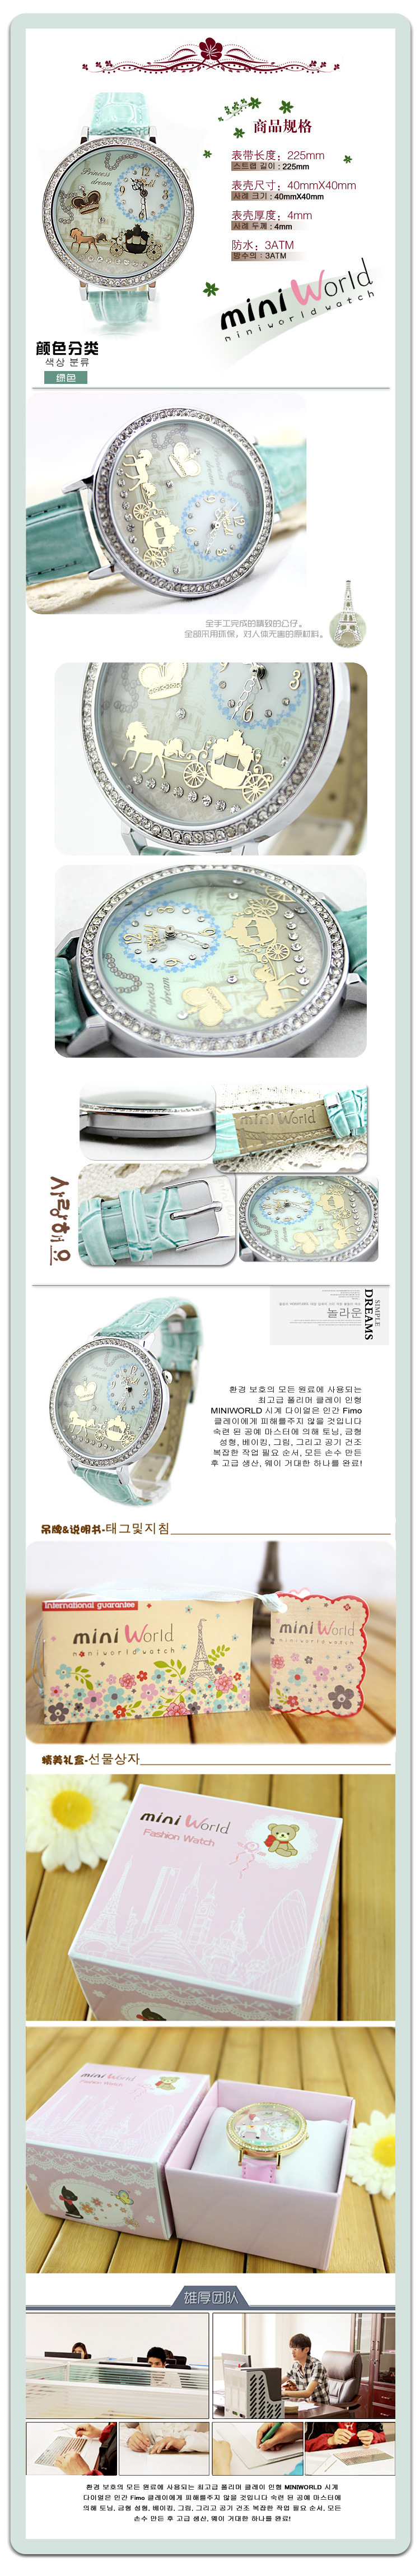 Đồng hồ 3D chính hãng MIni hàn quốc MI0014